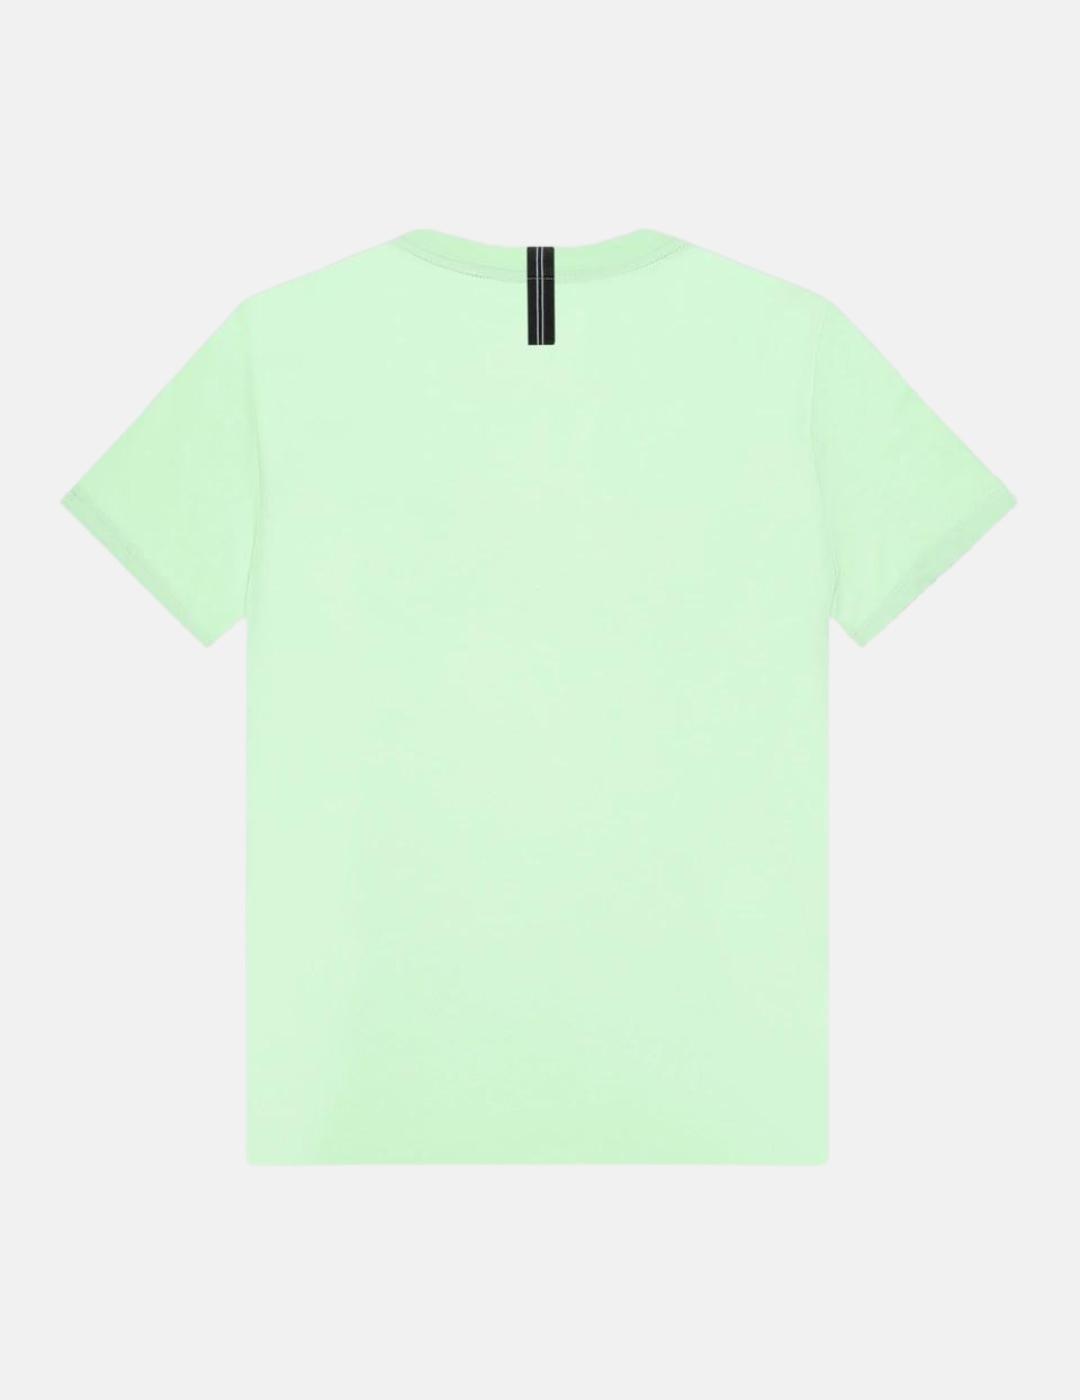 Camiseta Antony Morato verde neón para hombre